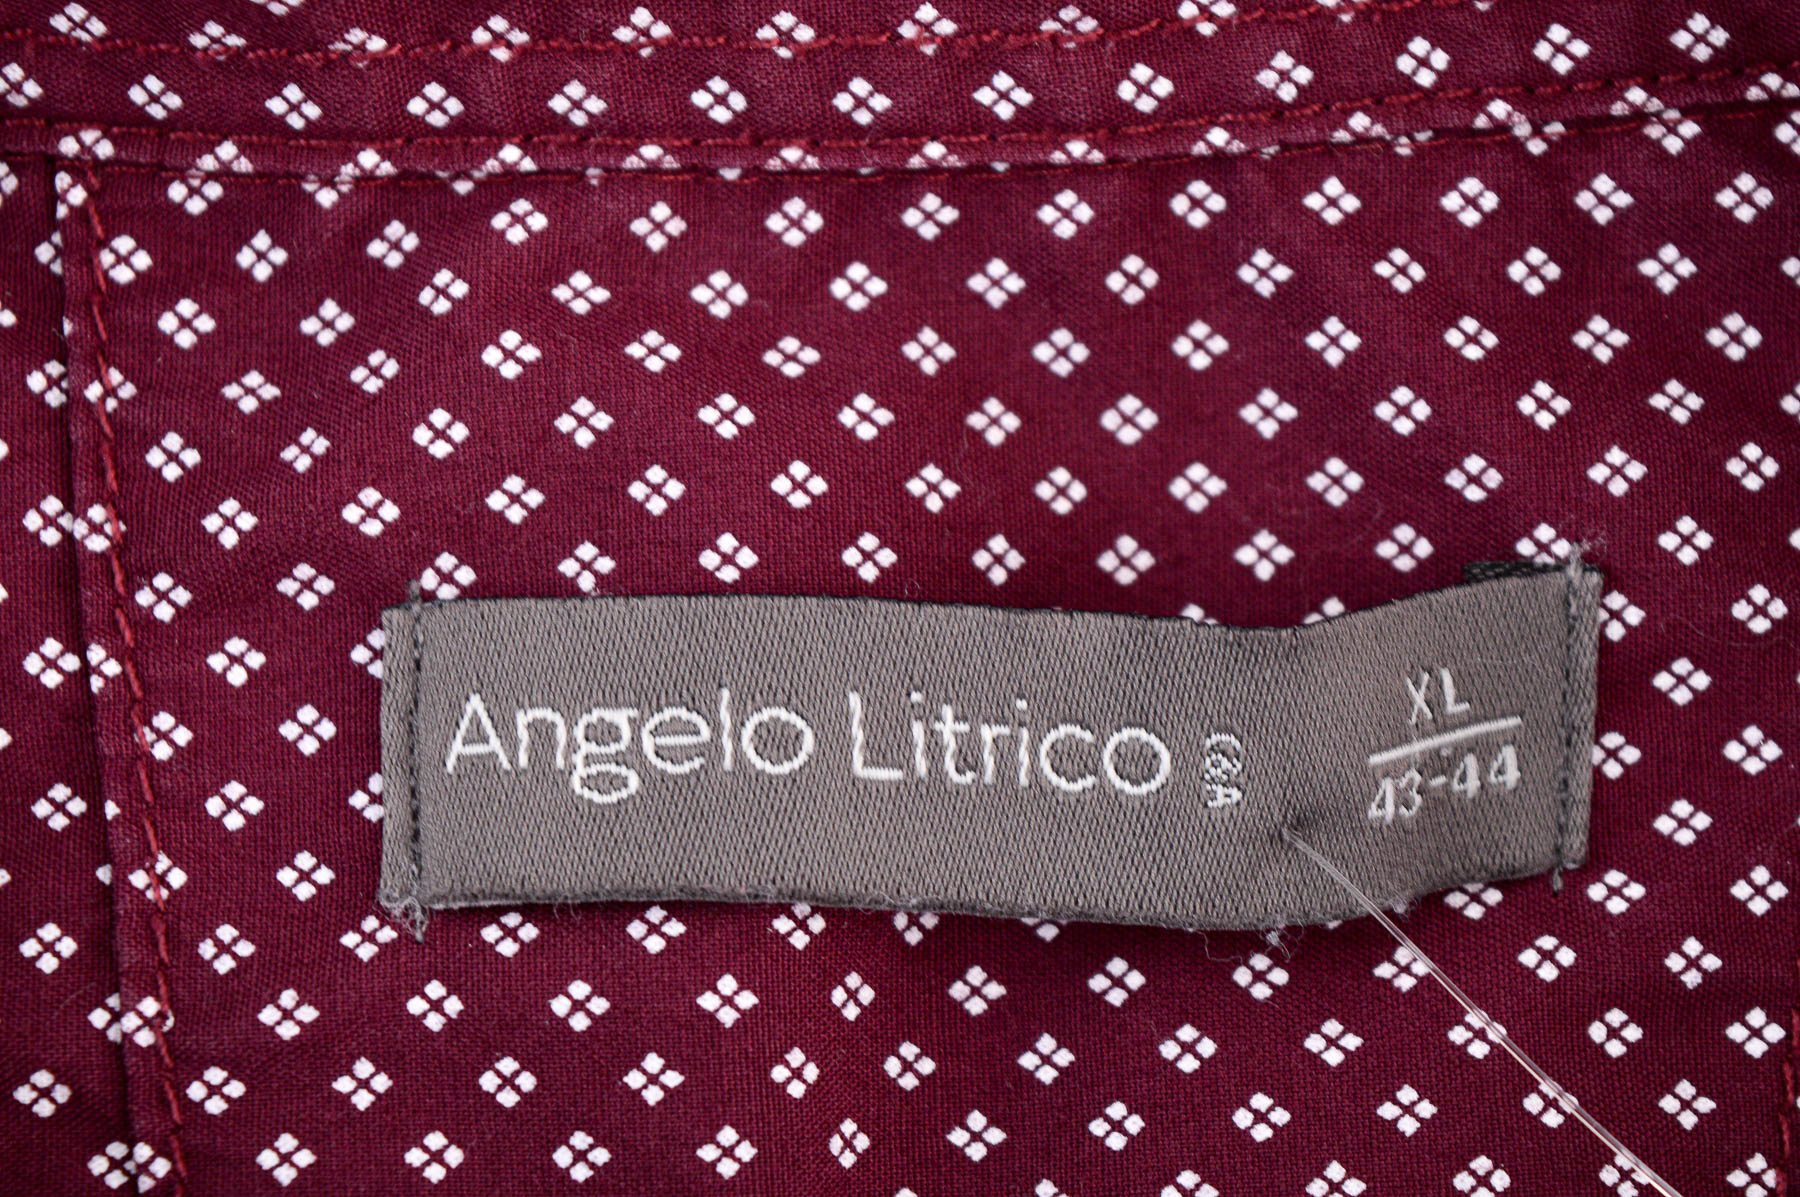 Ανδρικό πουκάμισο - Angelo Litrico - 2